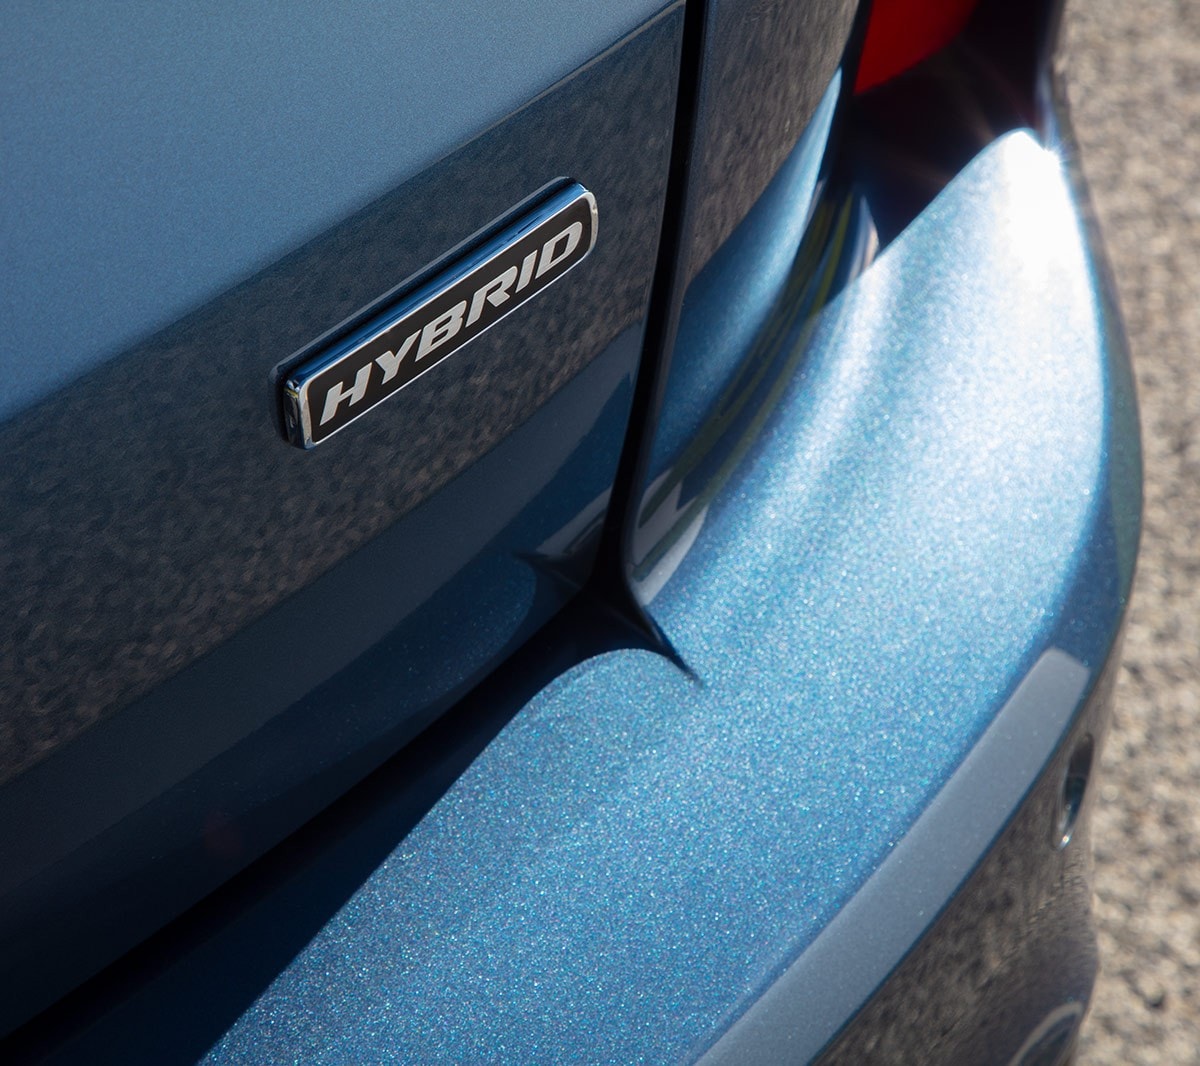 Ford Kuga hybrid badge close up